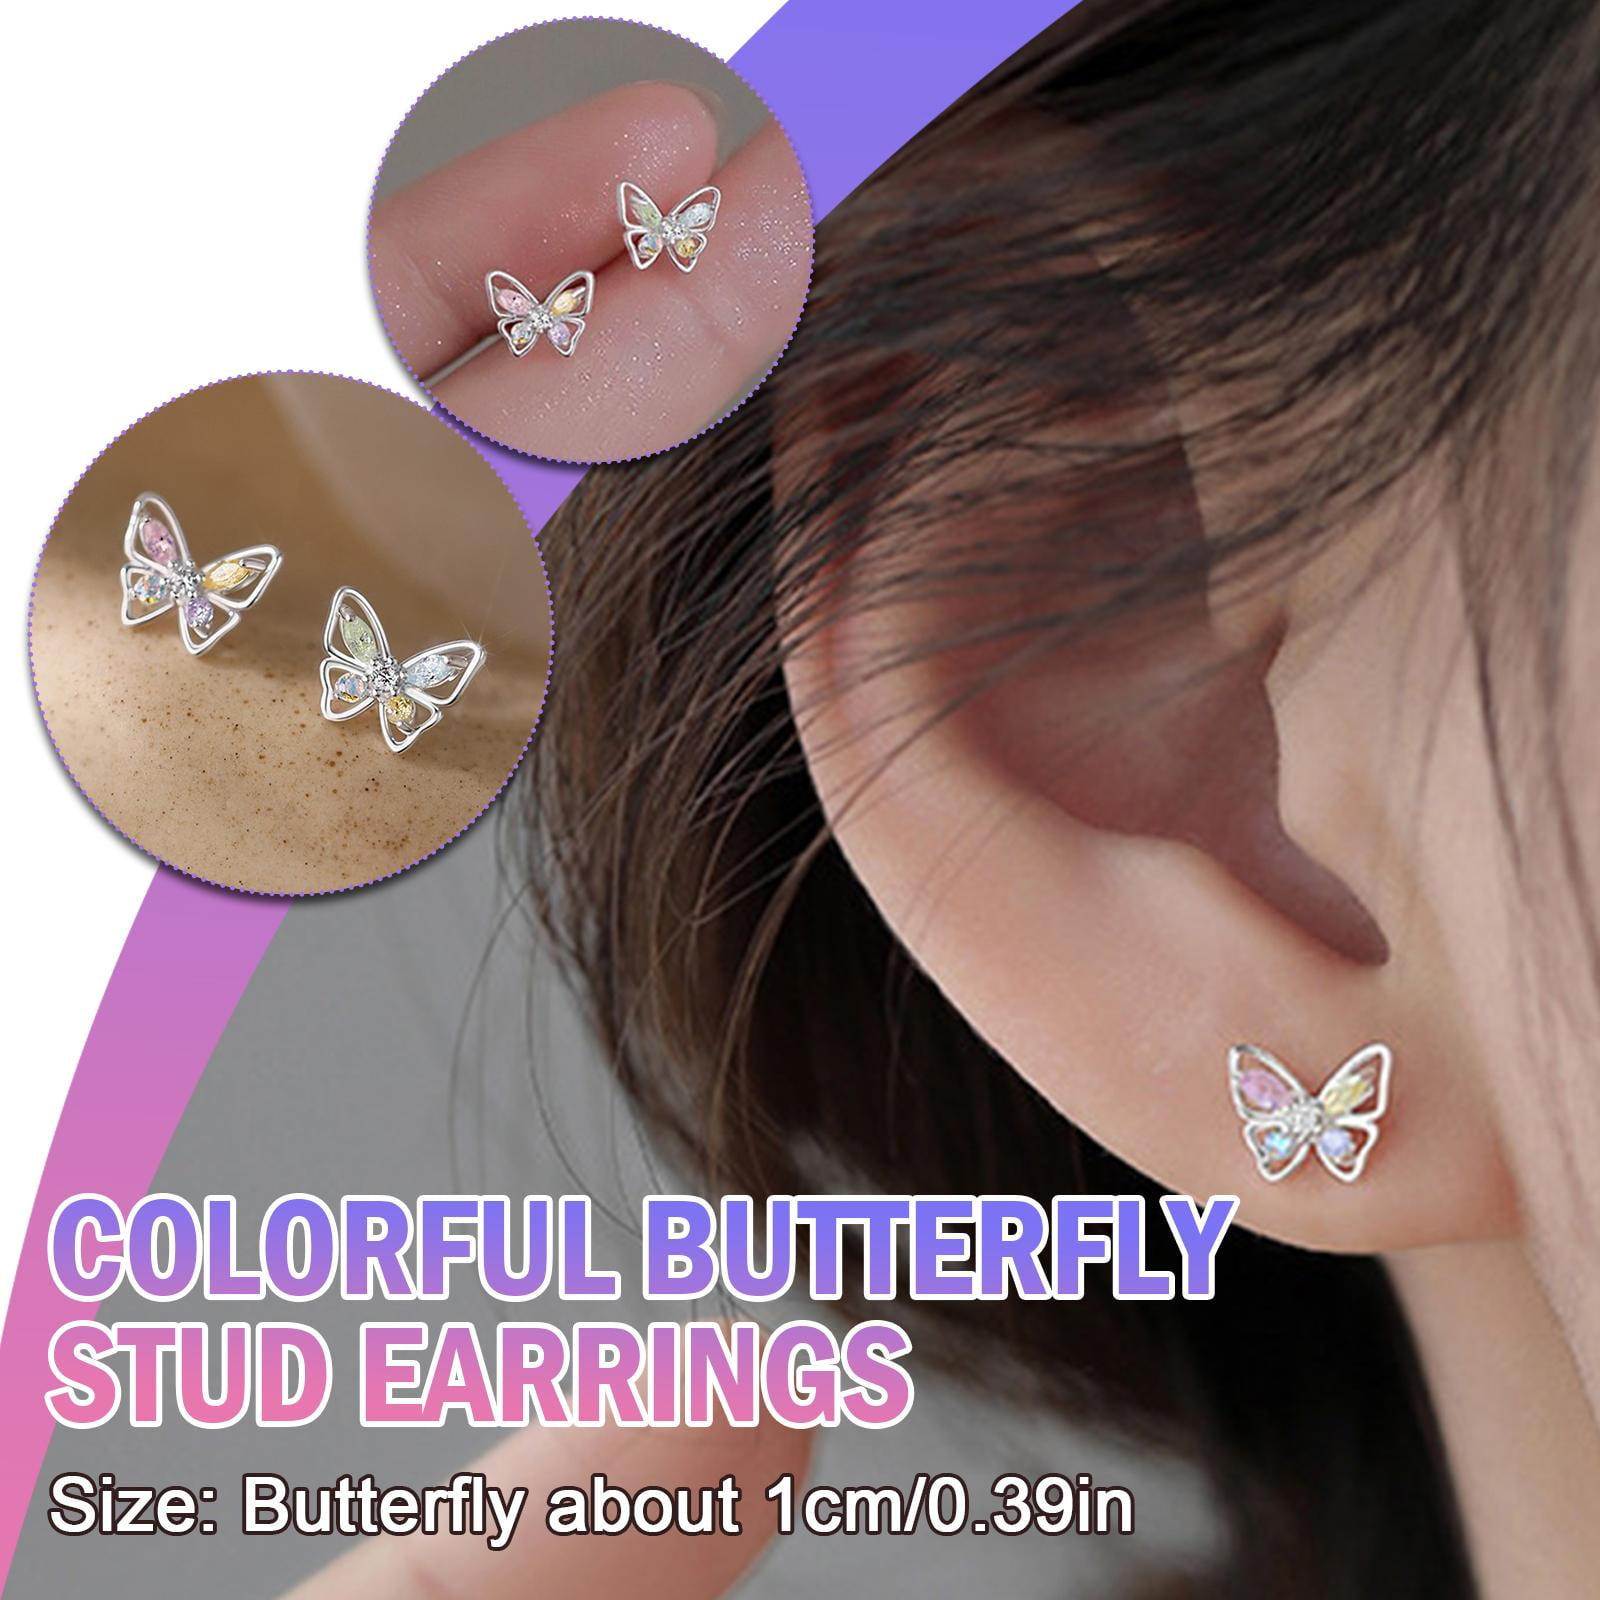 Small Colorful Butterfly Stud Earrings For Women Girls Butterfly Earrings f20b4892 3acc 4af7 96c6 6b580eaa20e9.d163048404f049718c064f938360c975